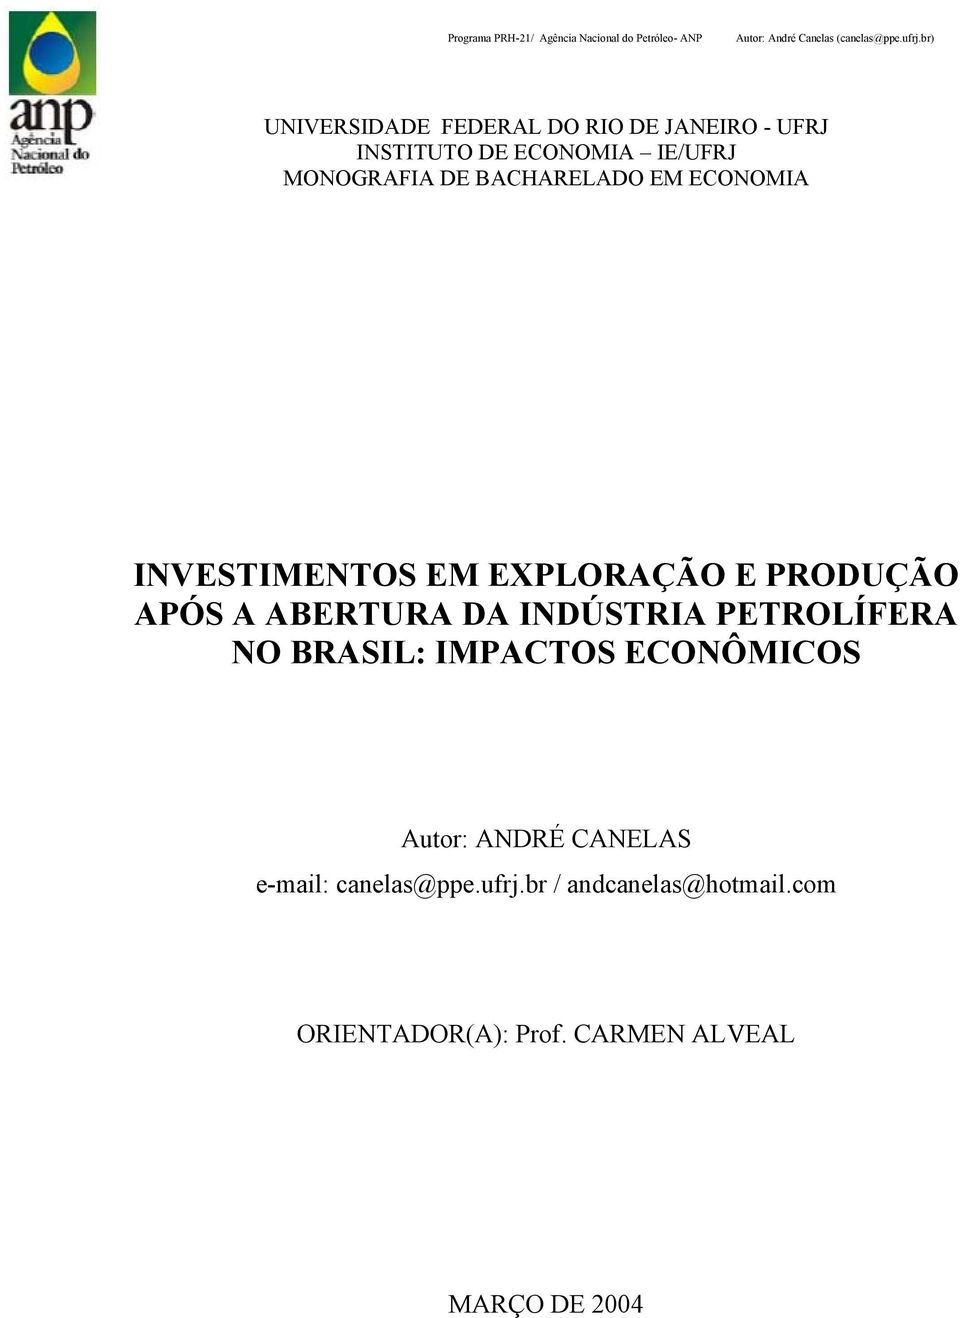 INDÚSTRIA PETROLÍFERA NO BRASIL: IMPACTOS ECONÔMICOS Autor: ANDRÉ CANELAS e-mail: